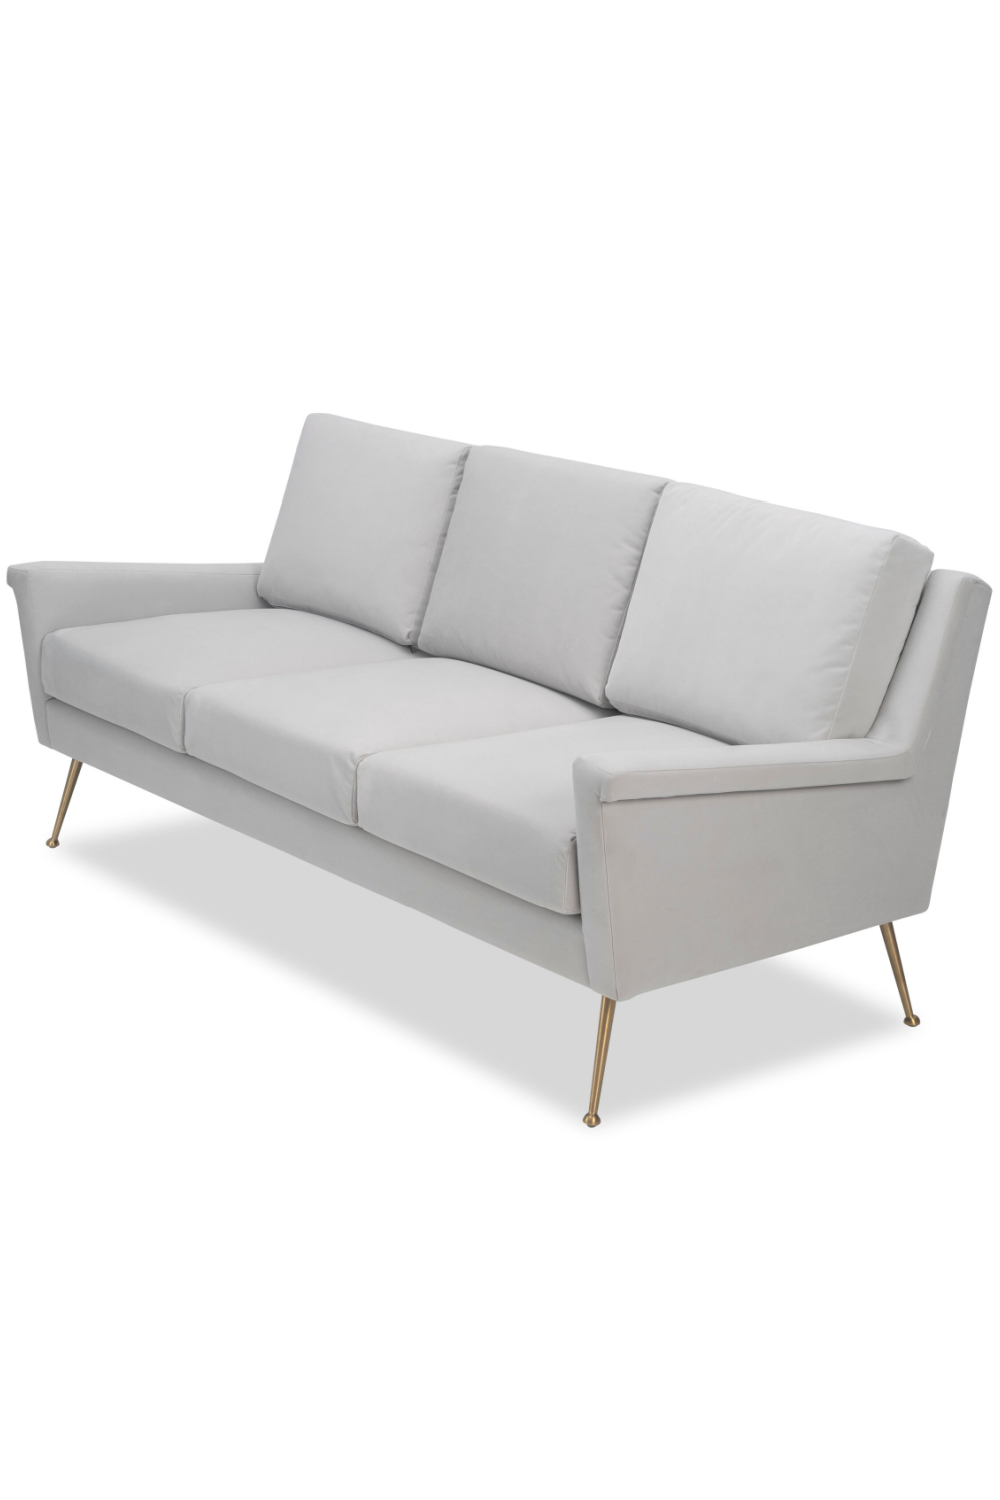 Gray Velvet 3-Seater Sofa | Liang & Eimil Lidmar | Oroa.com